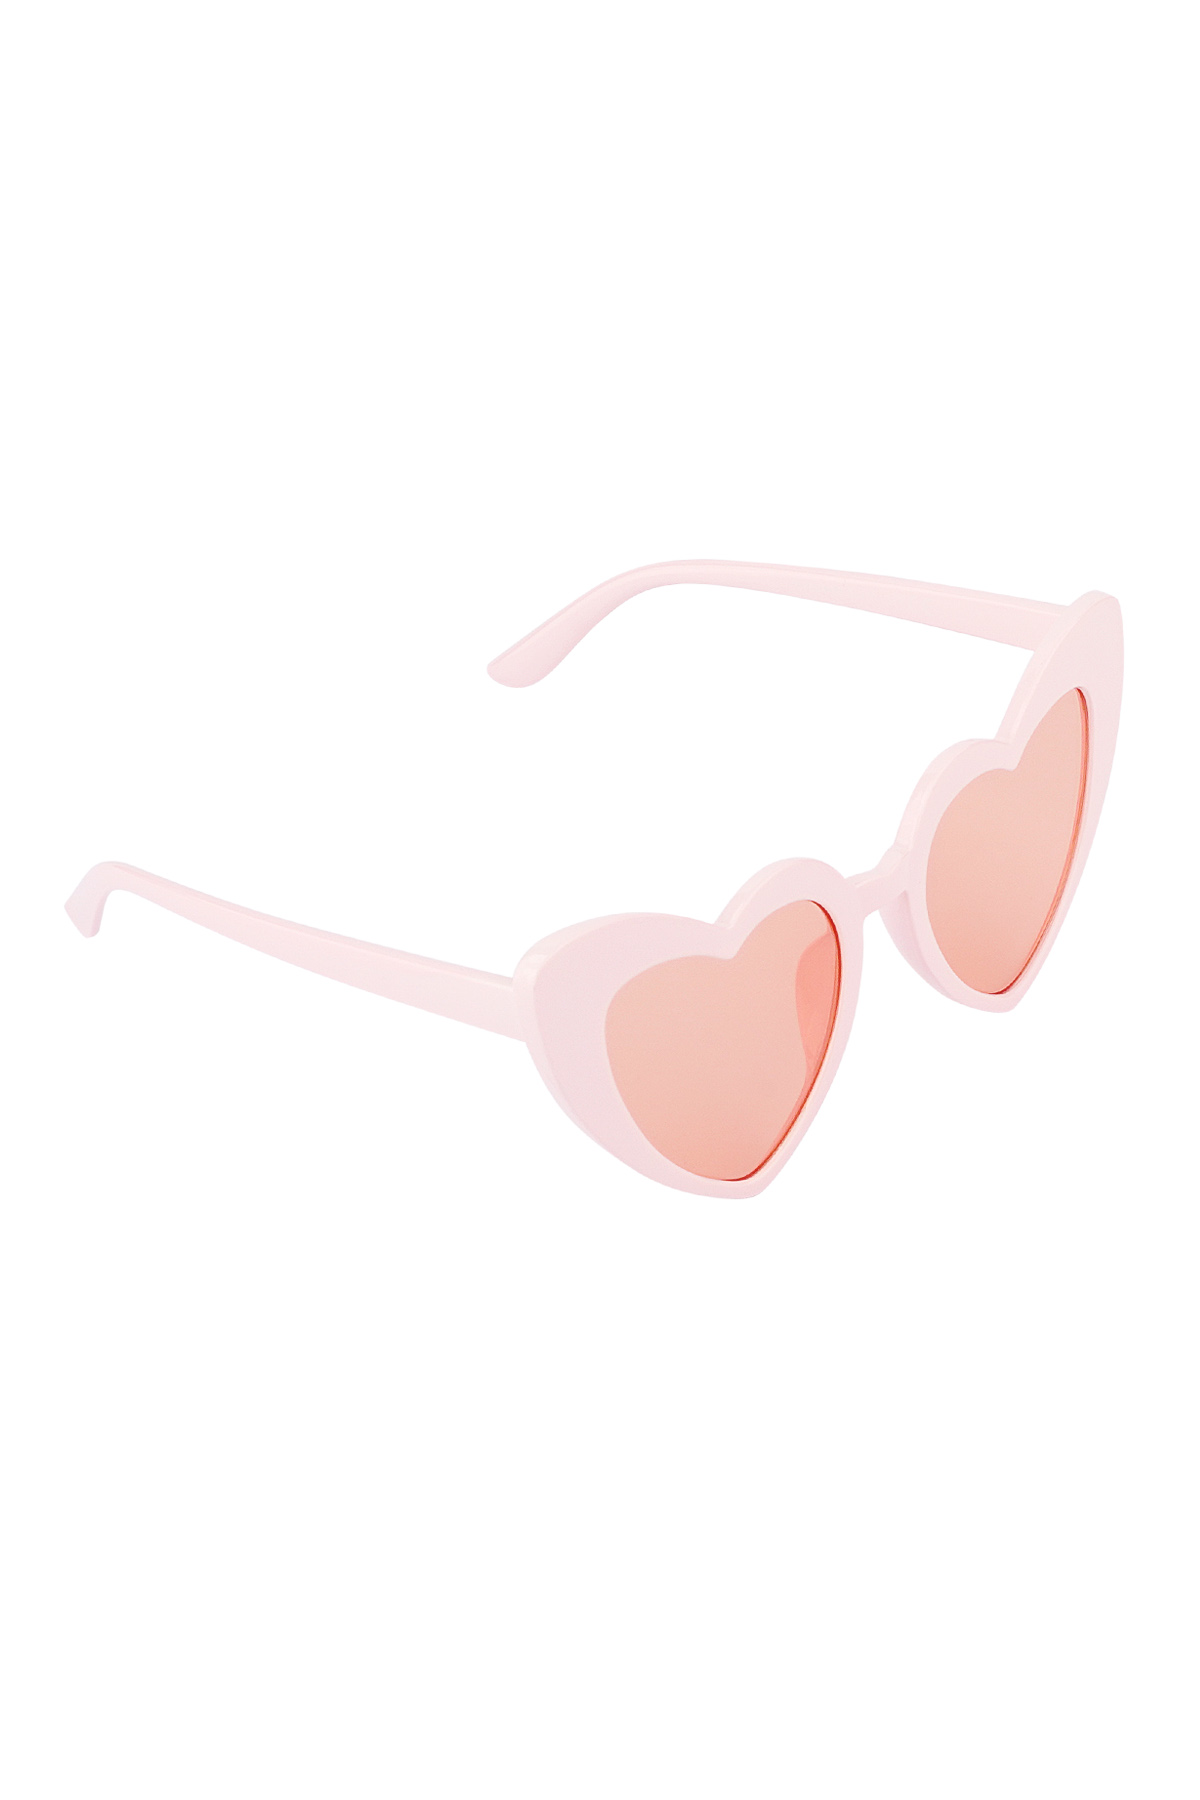 Sonnenbrillenliebe liegt in der Luft – rosa